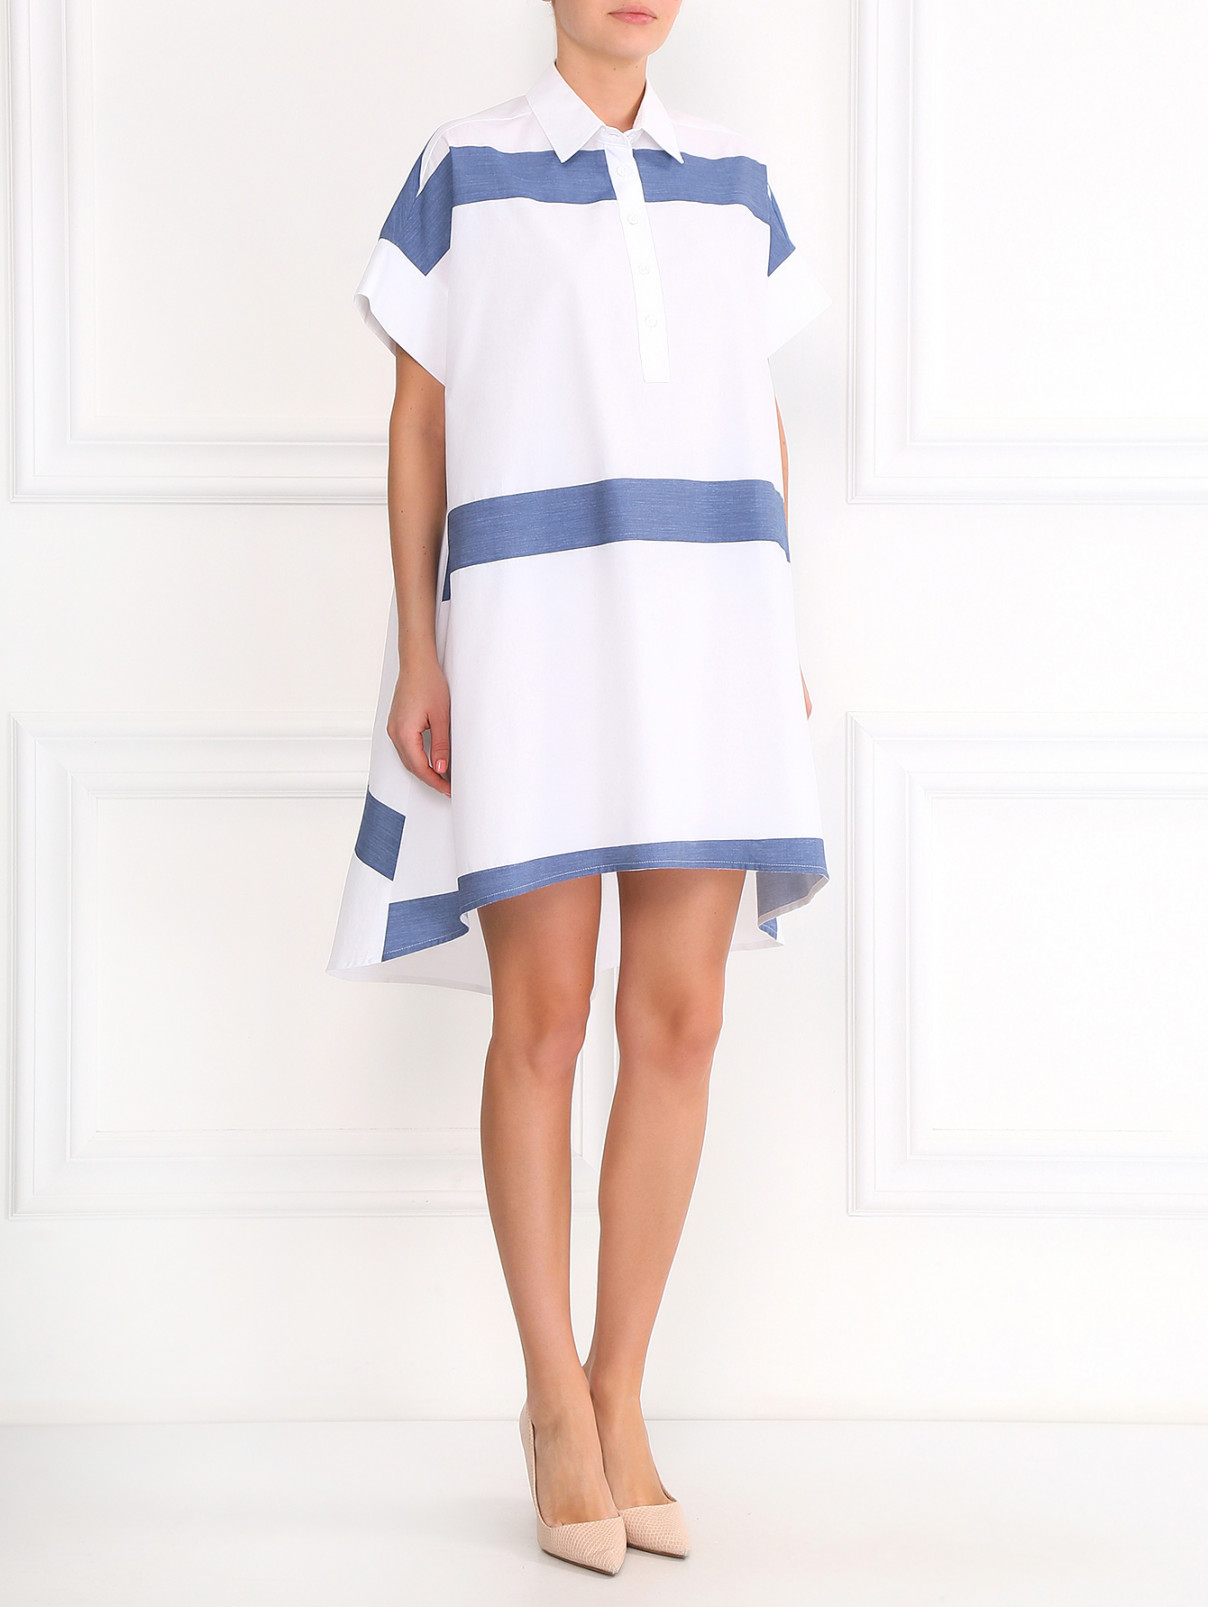 Свободное платье-мини из хлопка с узором "полоска" Isola Marras  –  Модель Общий вид  – Цвет:  Белый